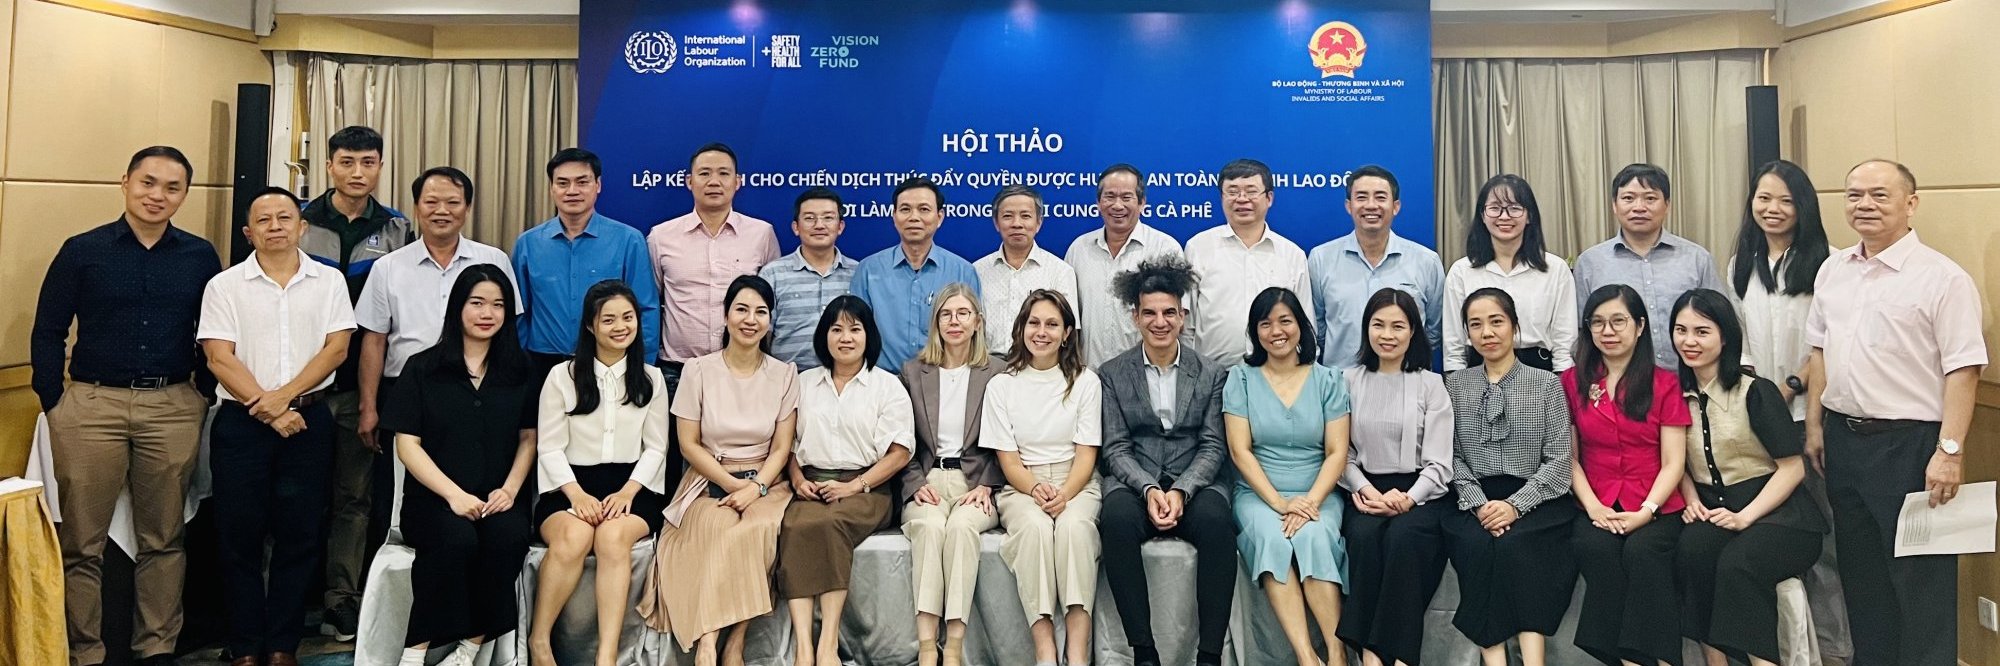 Vietnam workshop group photo